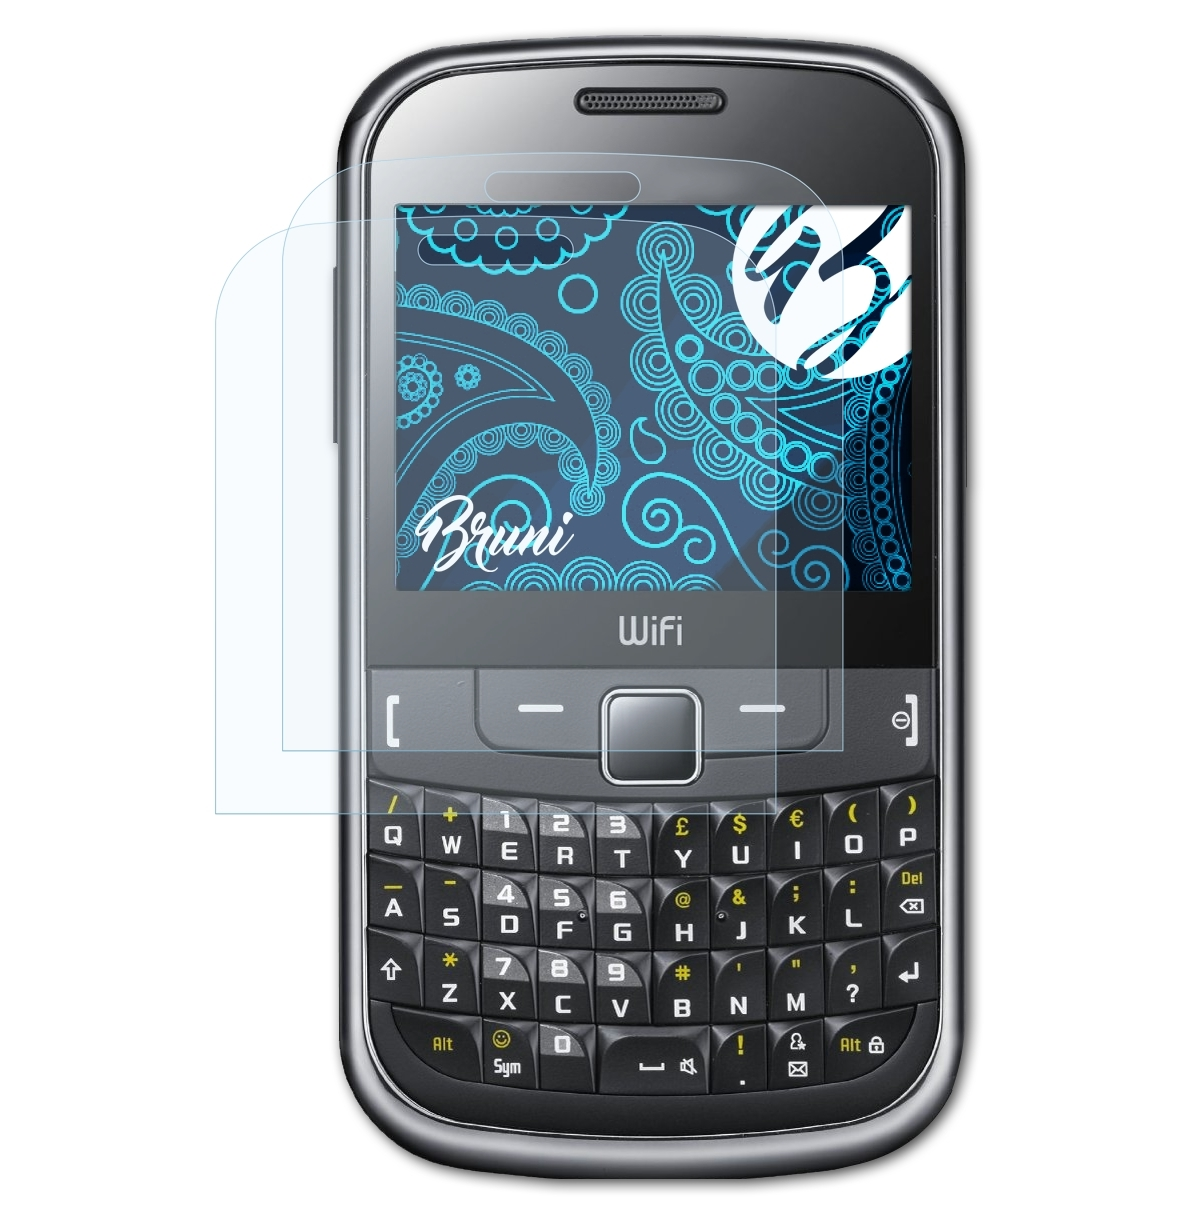 BRUNI 2x Schutzfolie(für 335 Chat Samsung (GT-S3350)) Basics-Clear